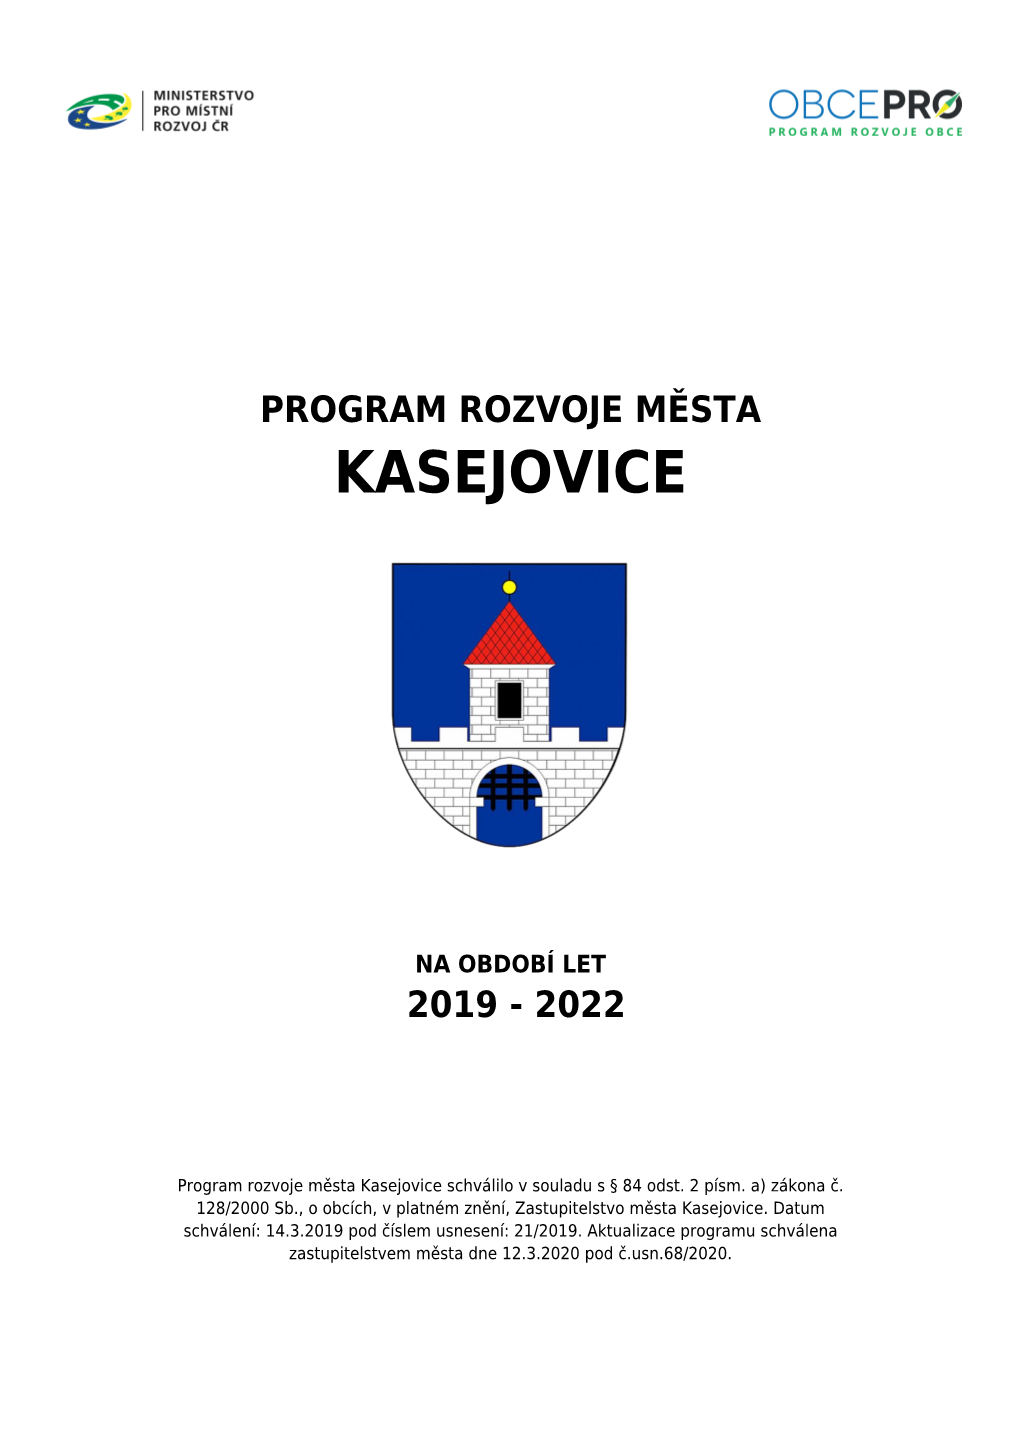 Program Rozvoje Města Kasejovice